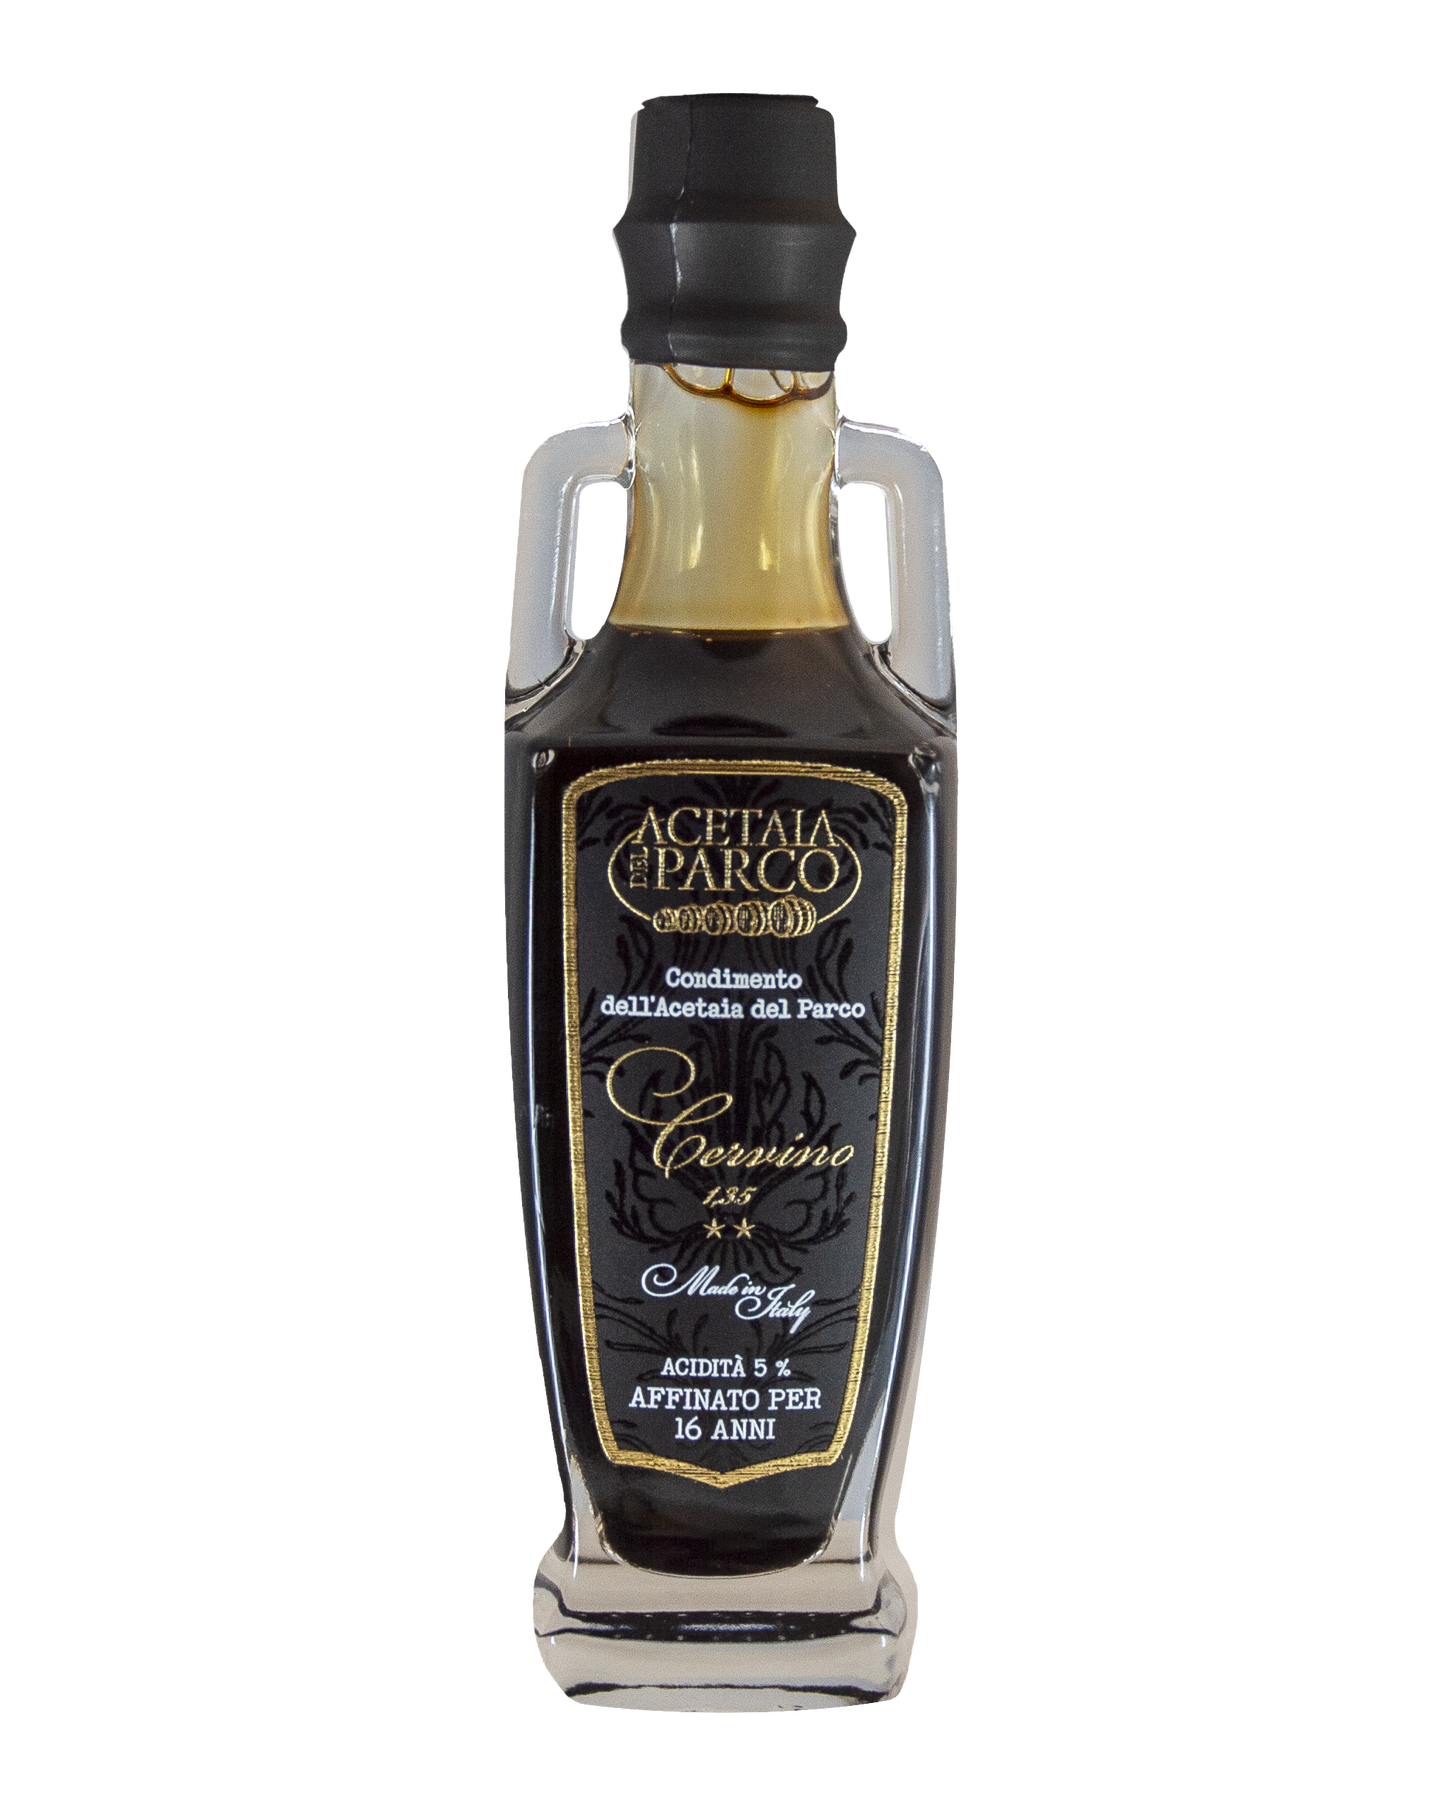 Etichetta Cervino - Condimento Balsamico 16 anni - Acetaia del Parco